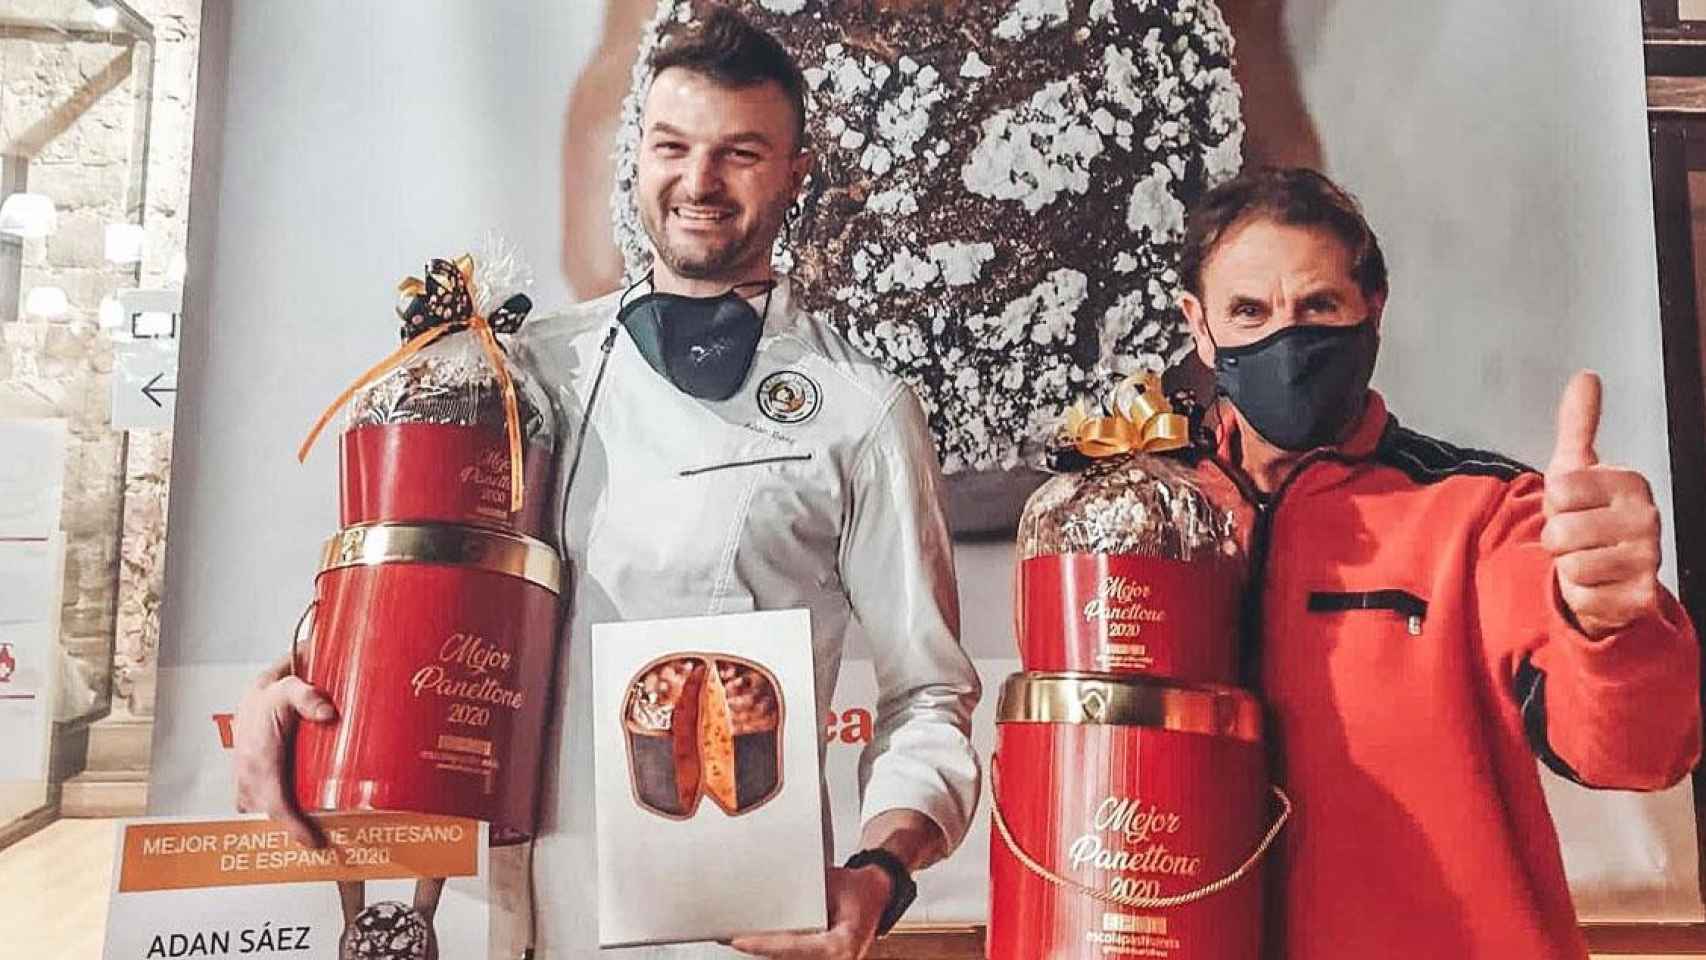 Adán y José Antonio Sáez, dueños de Xocosave, la pastelería que hace el mejor panetone de España / CG